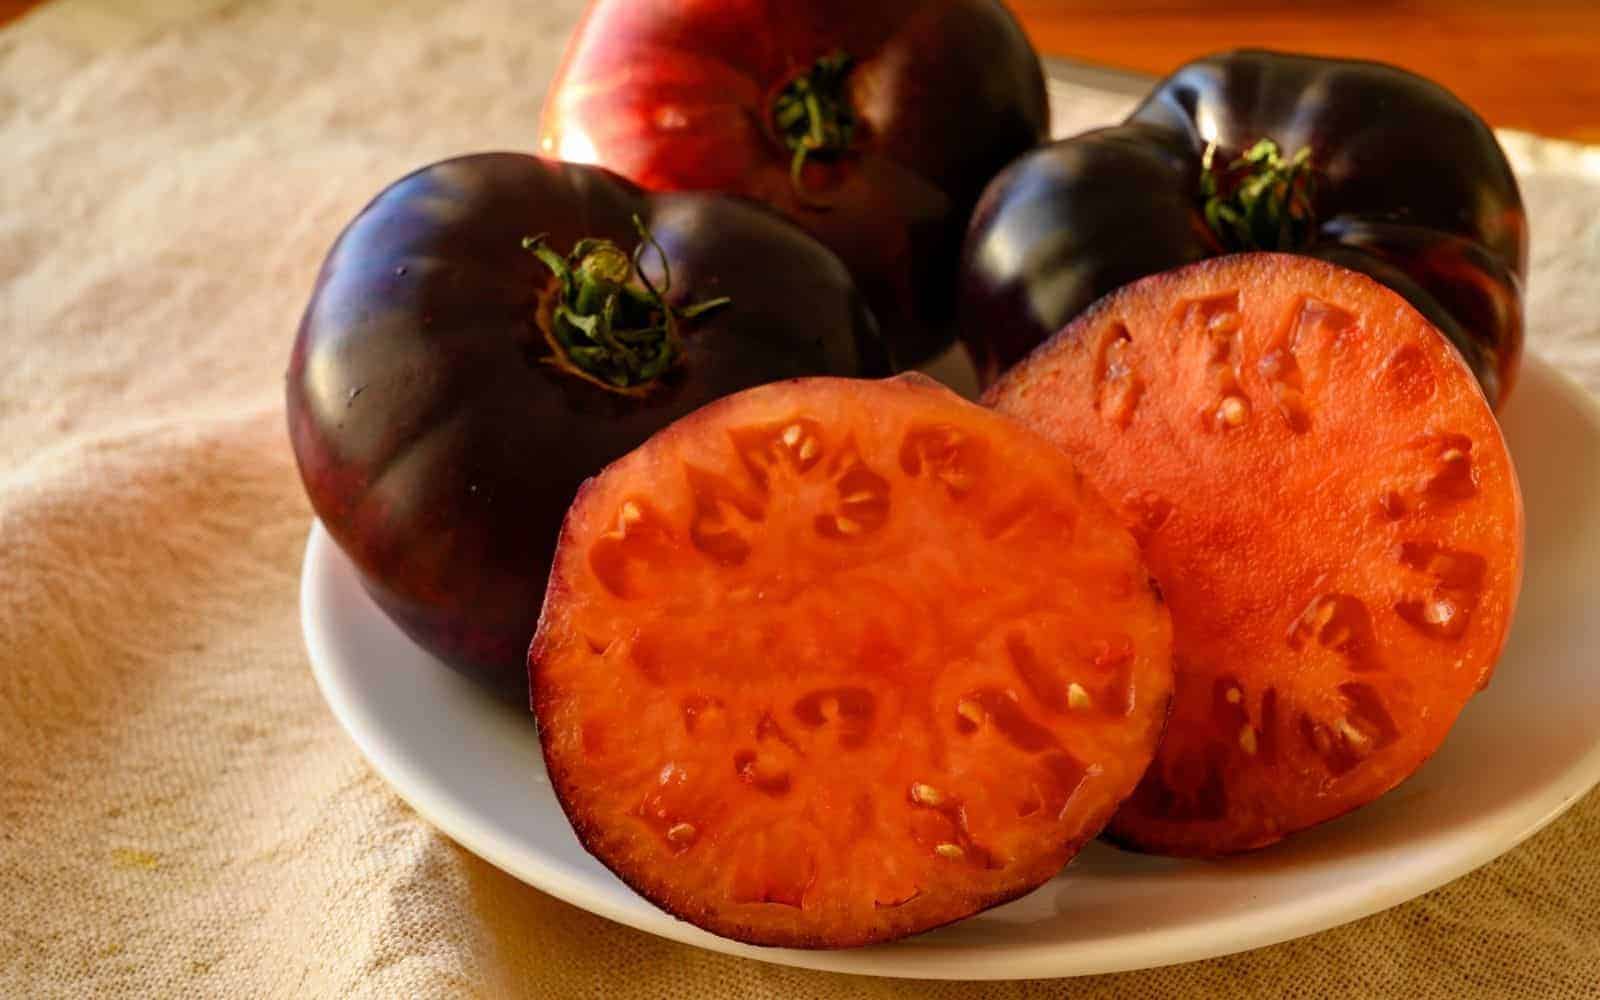 Purple calabash tomatoes